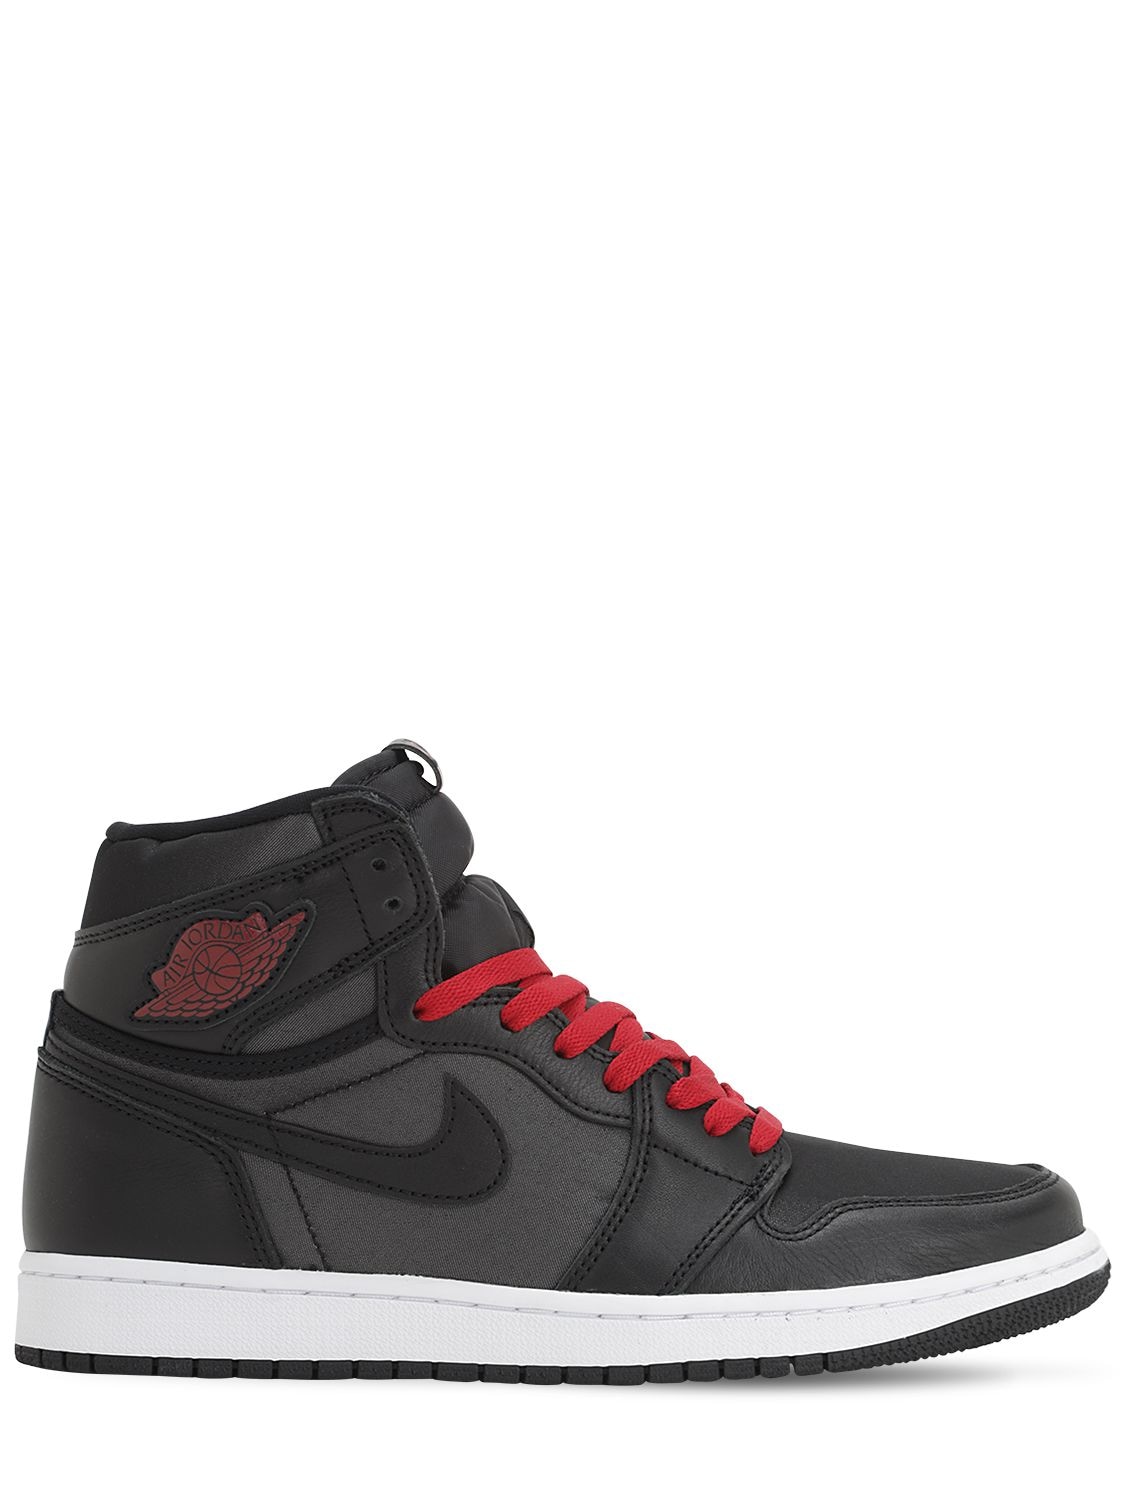 Nike Air Jordan Retro 1 High Og Casual Shoes In Black Satin